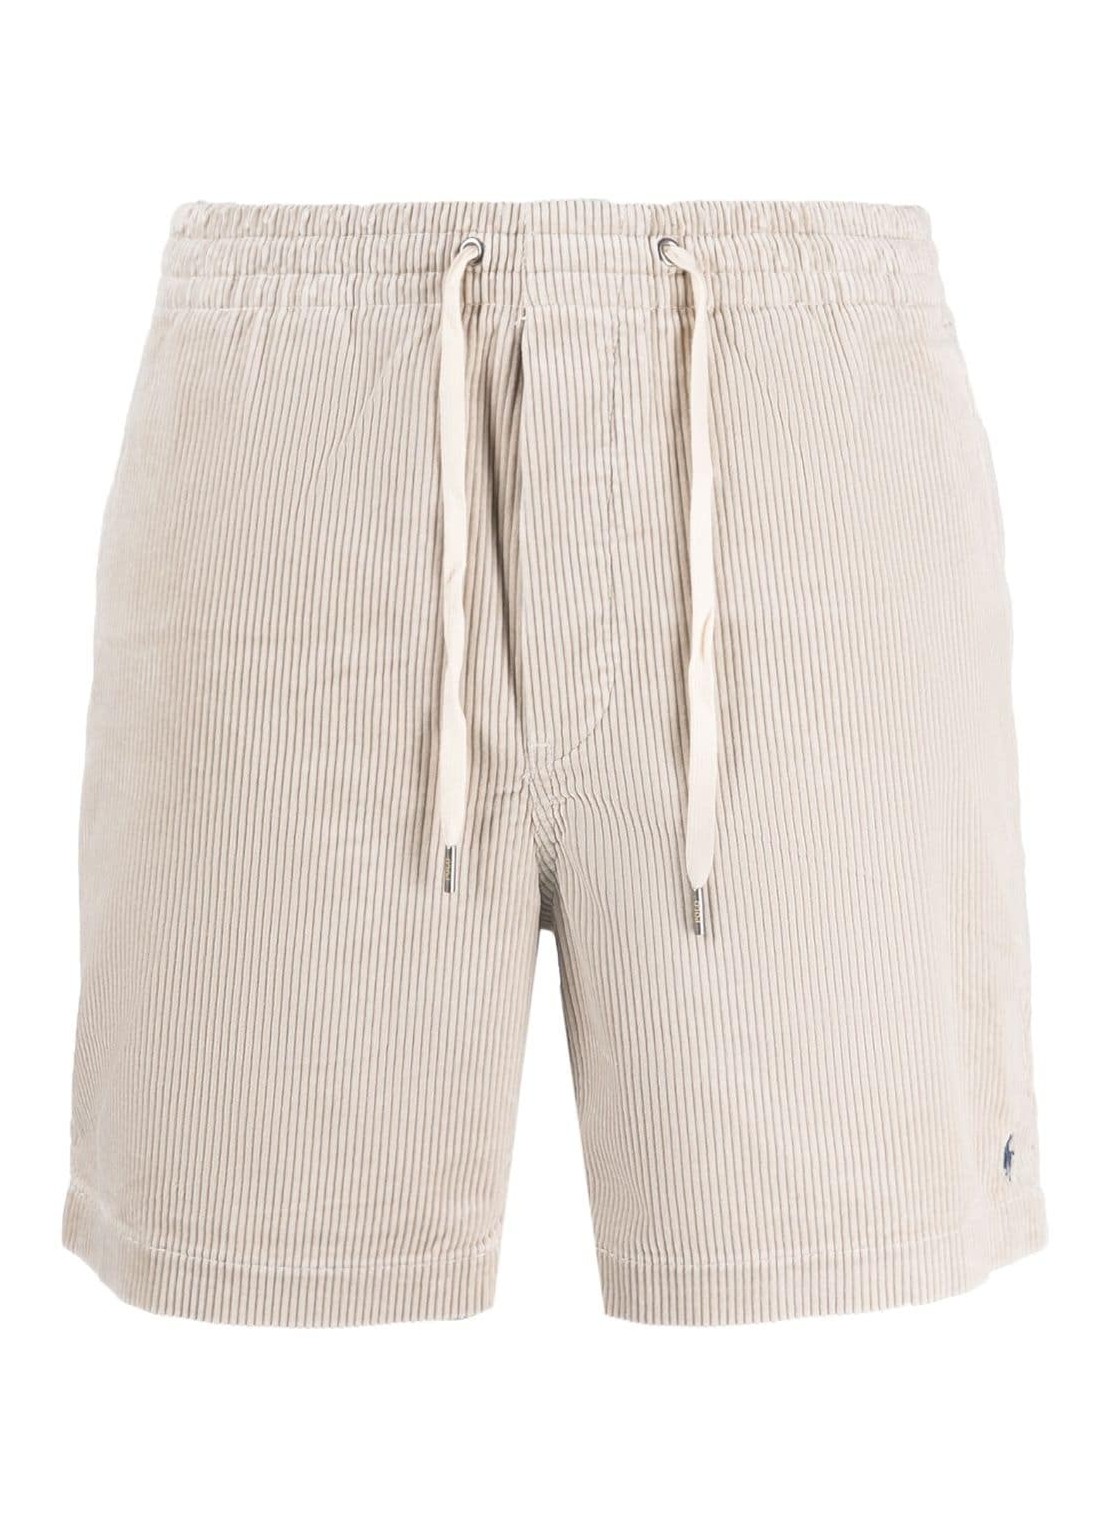 Pantalon corto polo ralph lauren short pant mancfprepsters flat short - 710800214028 khaki stone tal